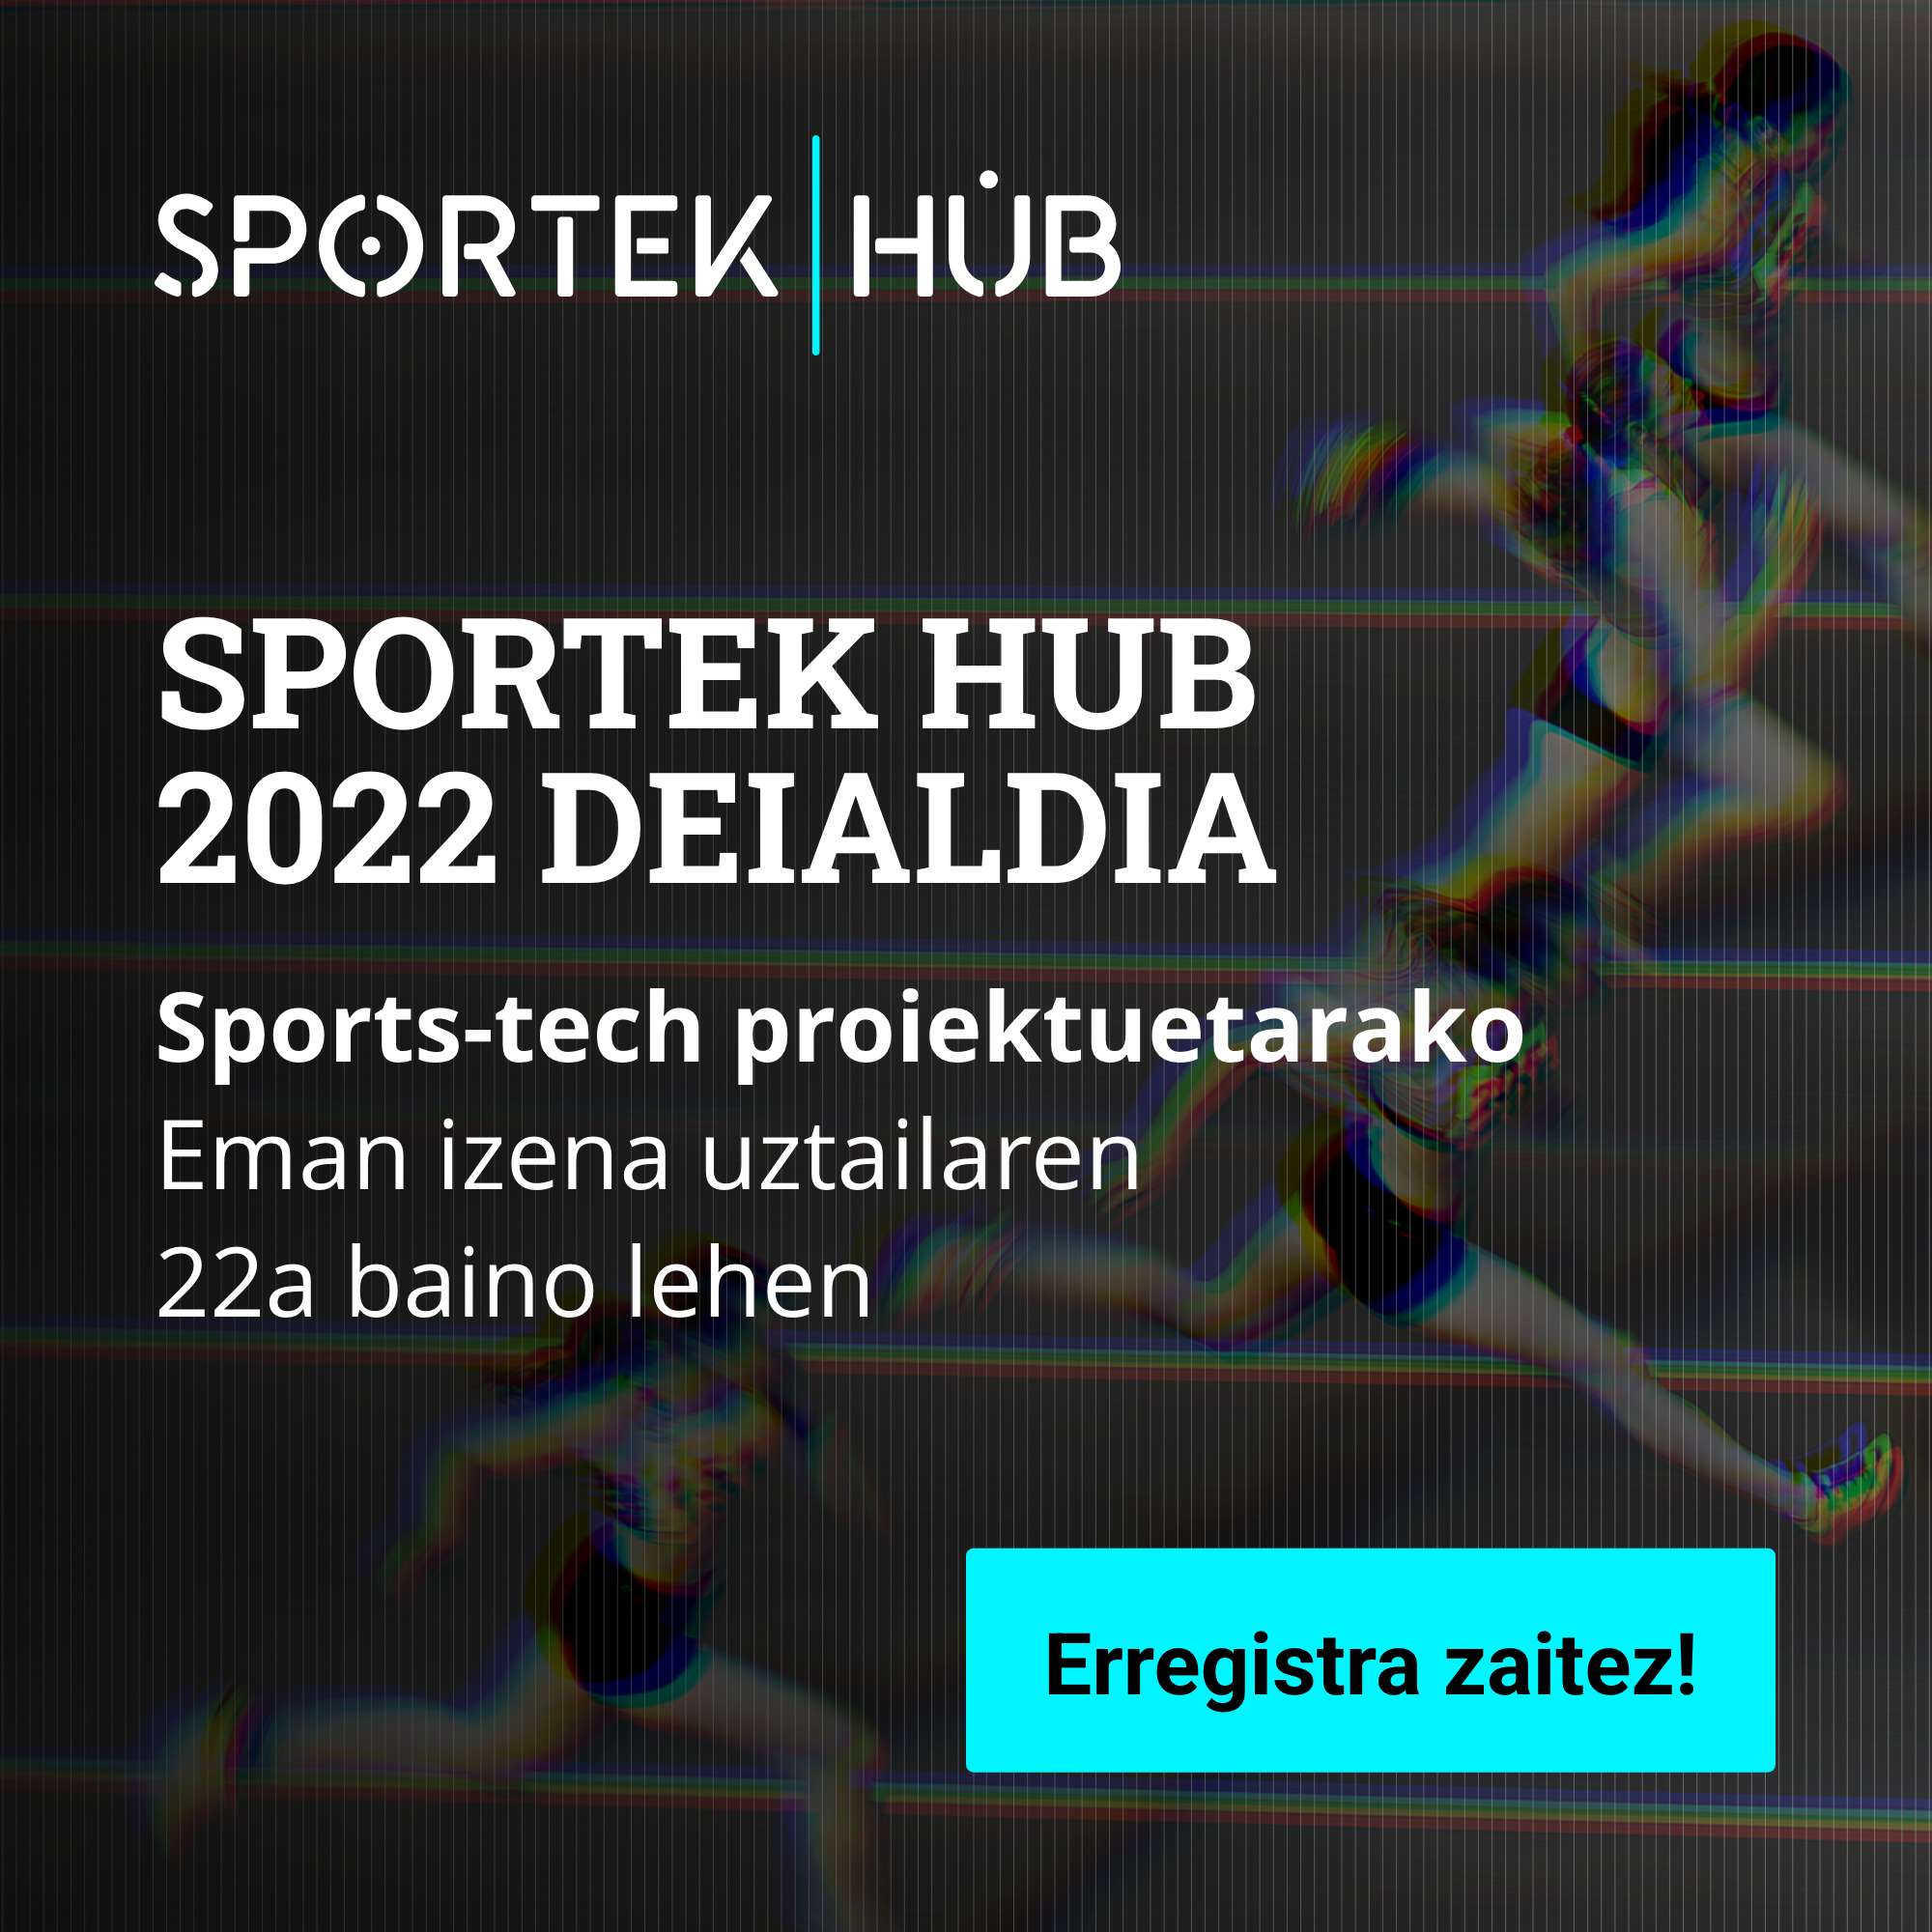 Sportek Hub abre su primera convocatoria para personas emprendedoras y startups con proyectos Sports-Tech